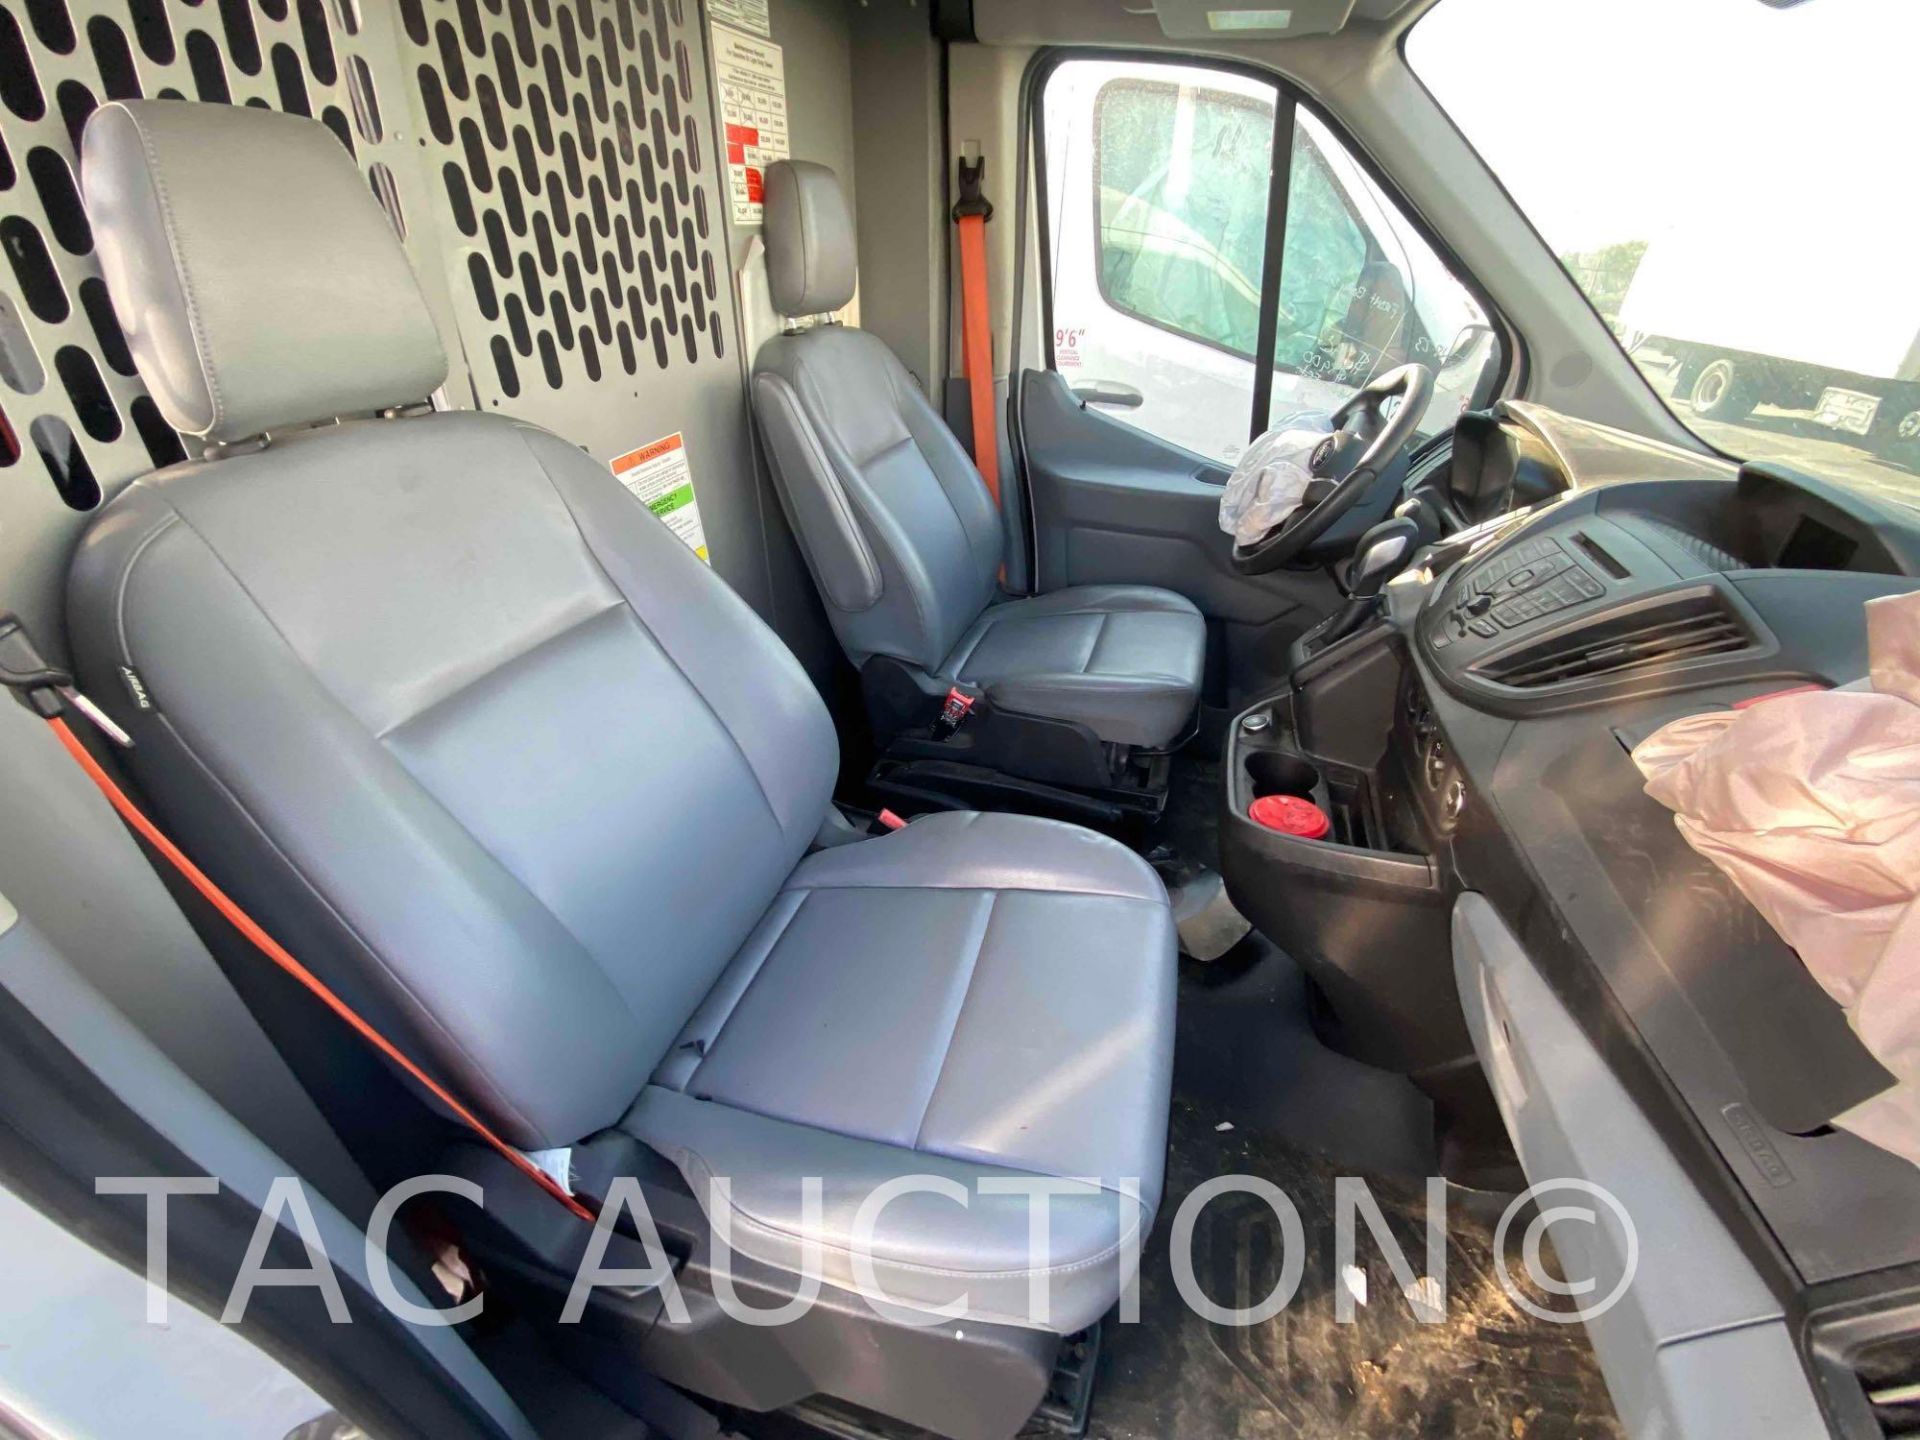 2019 Ford Transit 150 Cargo Van - Image 19 of 42